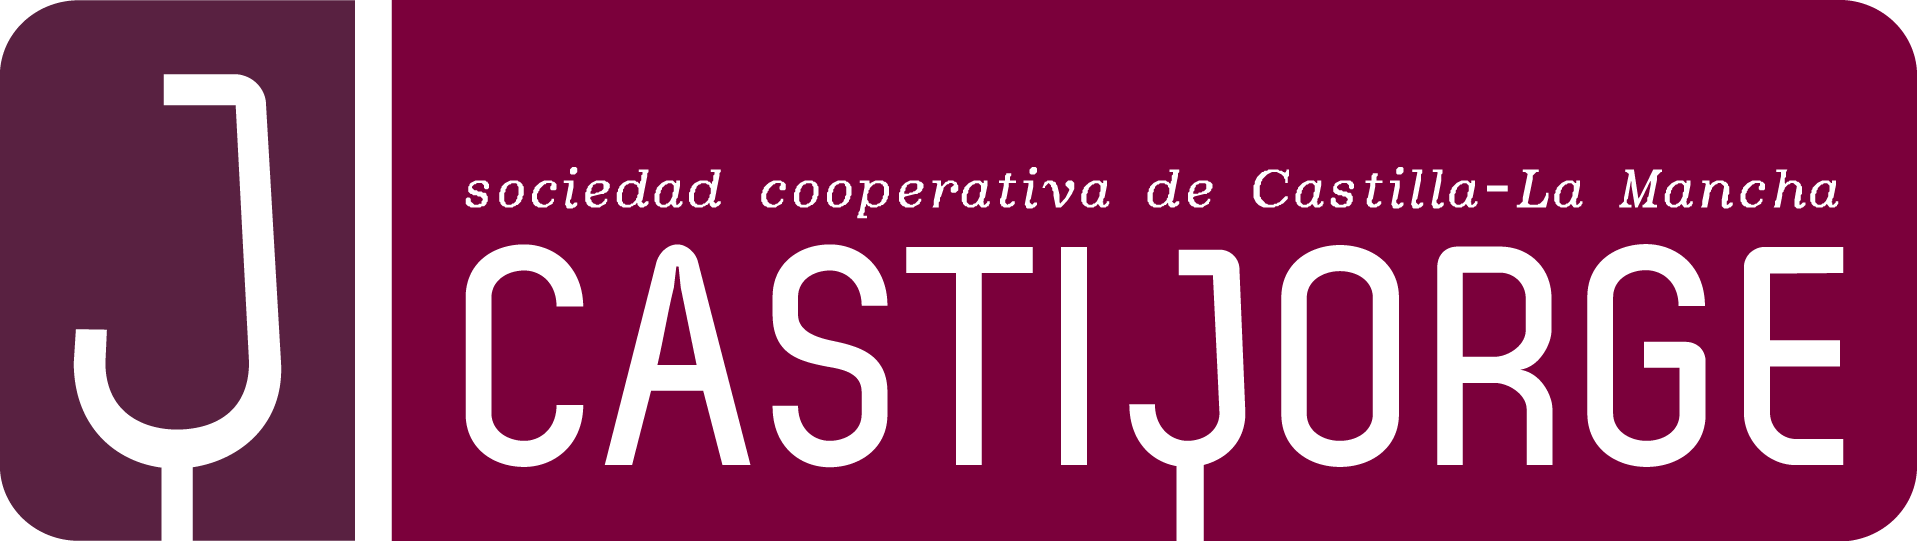 logo-Castijorge-Sociedad-Cooperativa-de-Castilla-La-Mancha